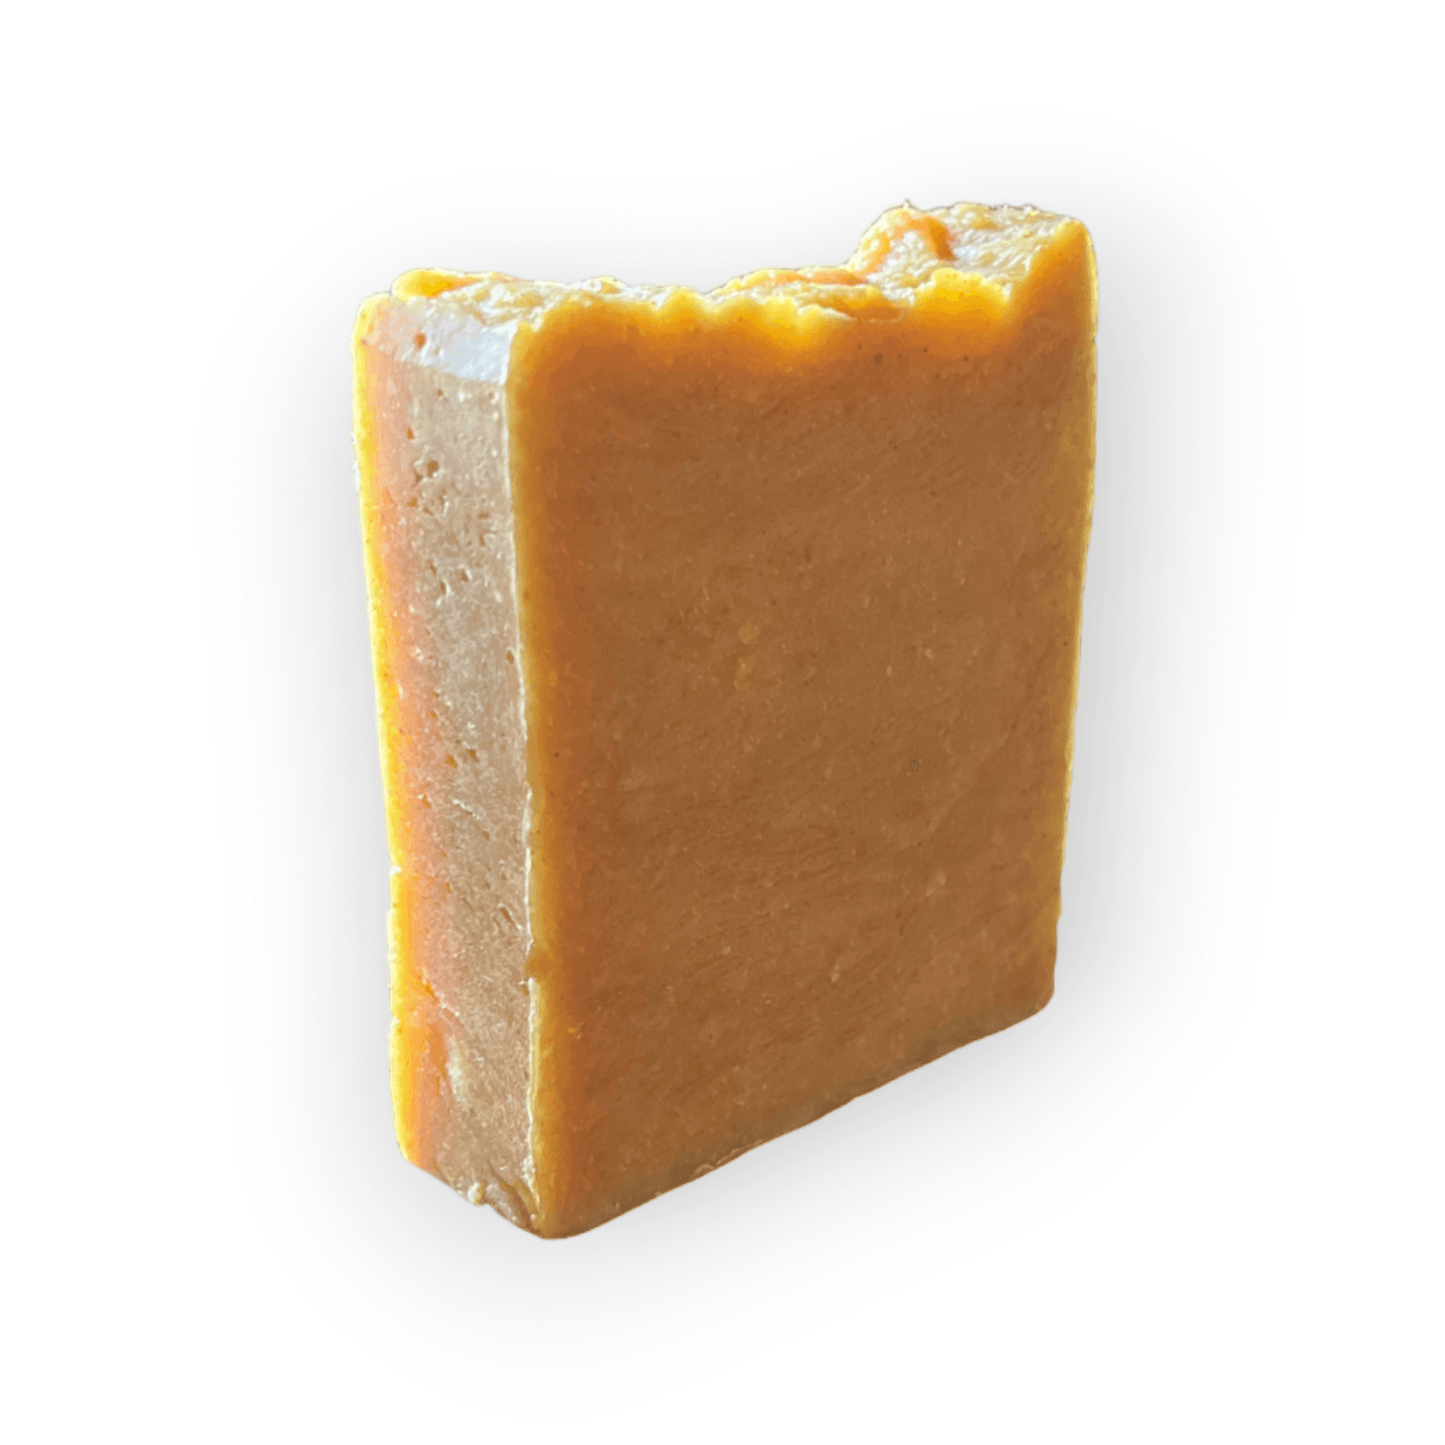 Patchouli Soap Bar